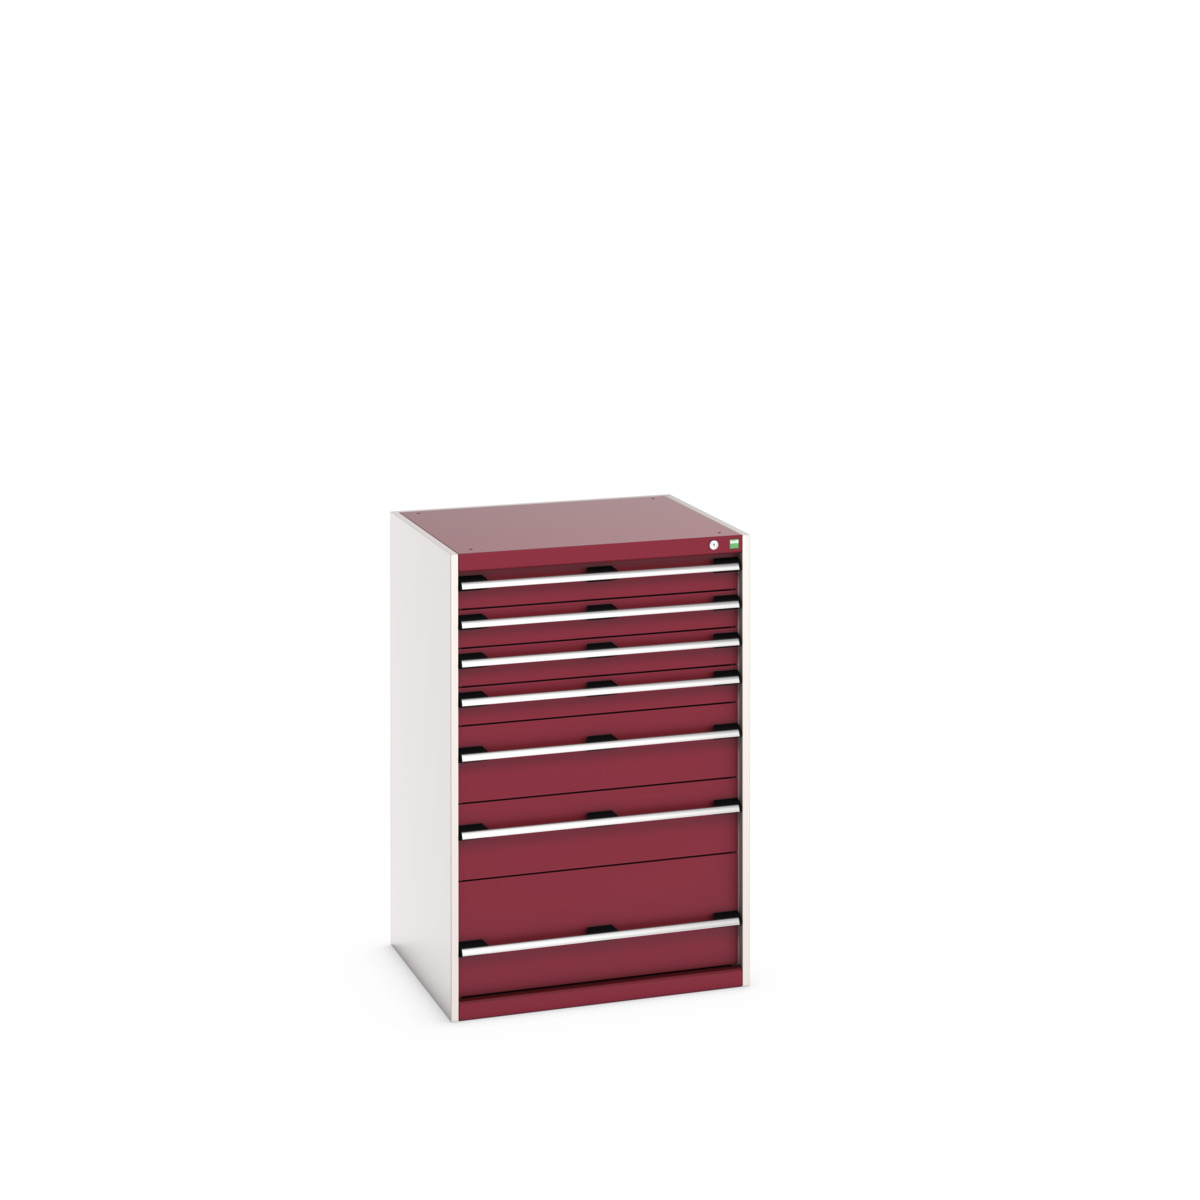 40028031.24V - cubio drawer cabinet